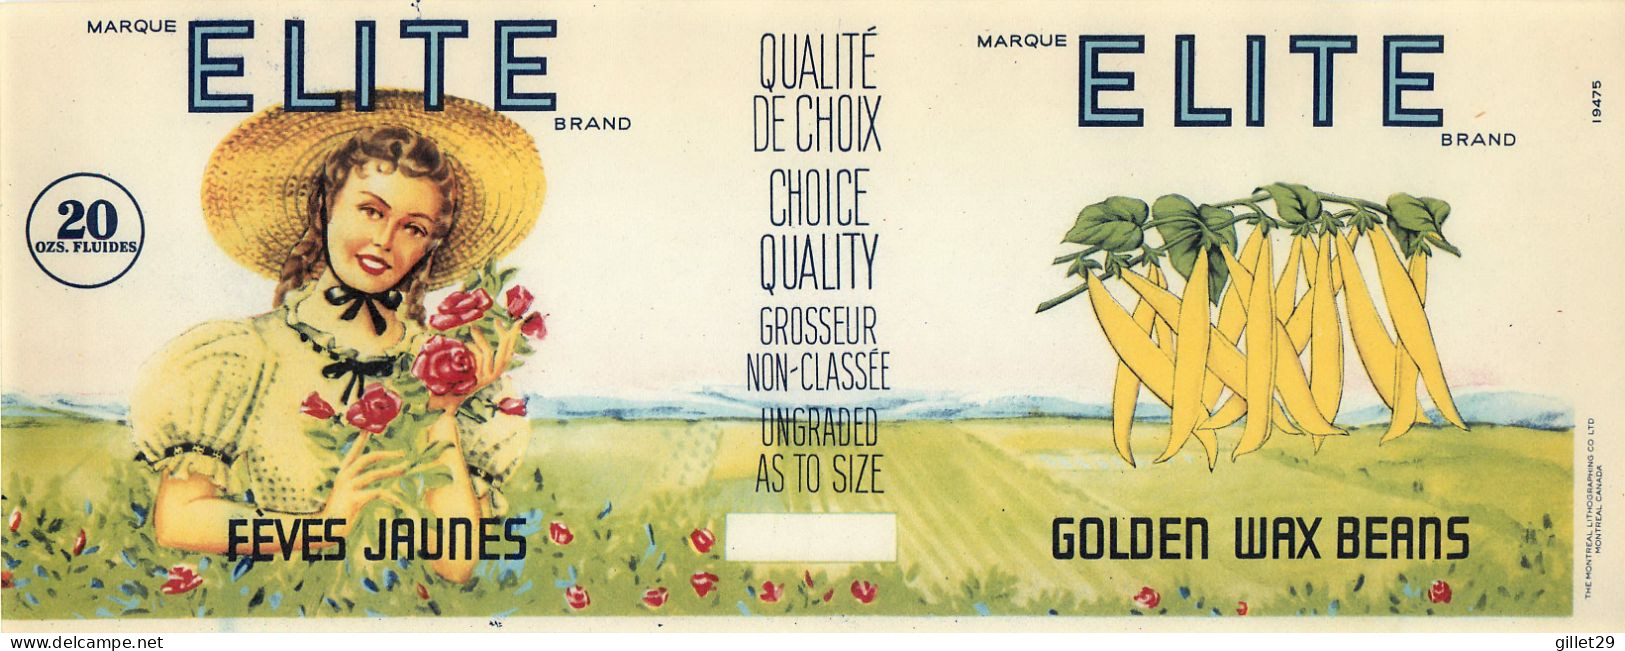 ÉTIQUETTES - MARQUE ELITE BRAND - FÈVES JAUNES - GOLDEN WAX BEANS - 20 OZS CANADA - DIMENSION 10.5 X 28 Cm - - Fruit En Groenten